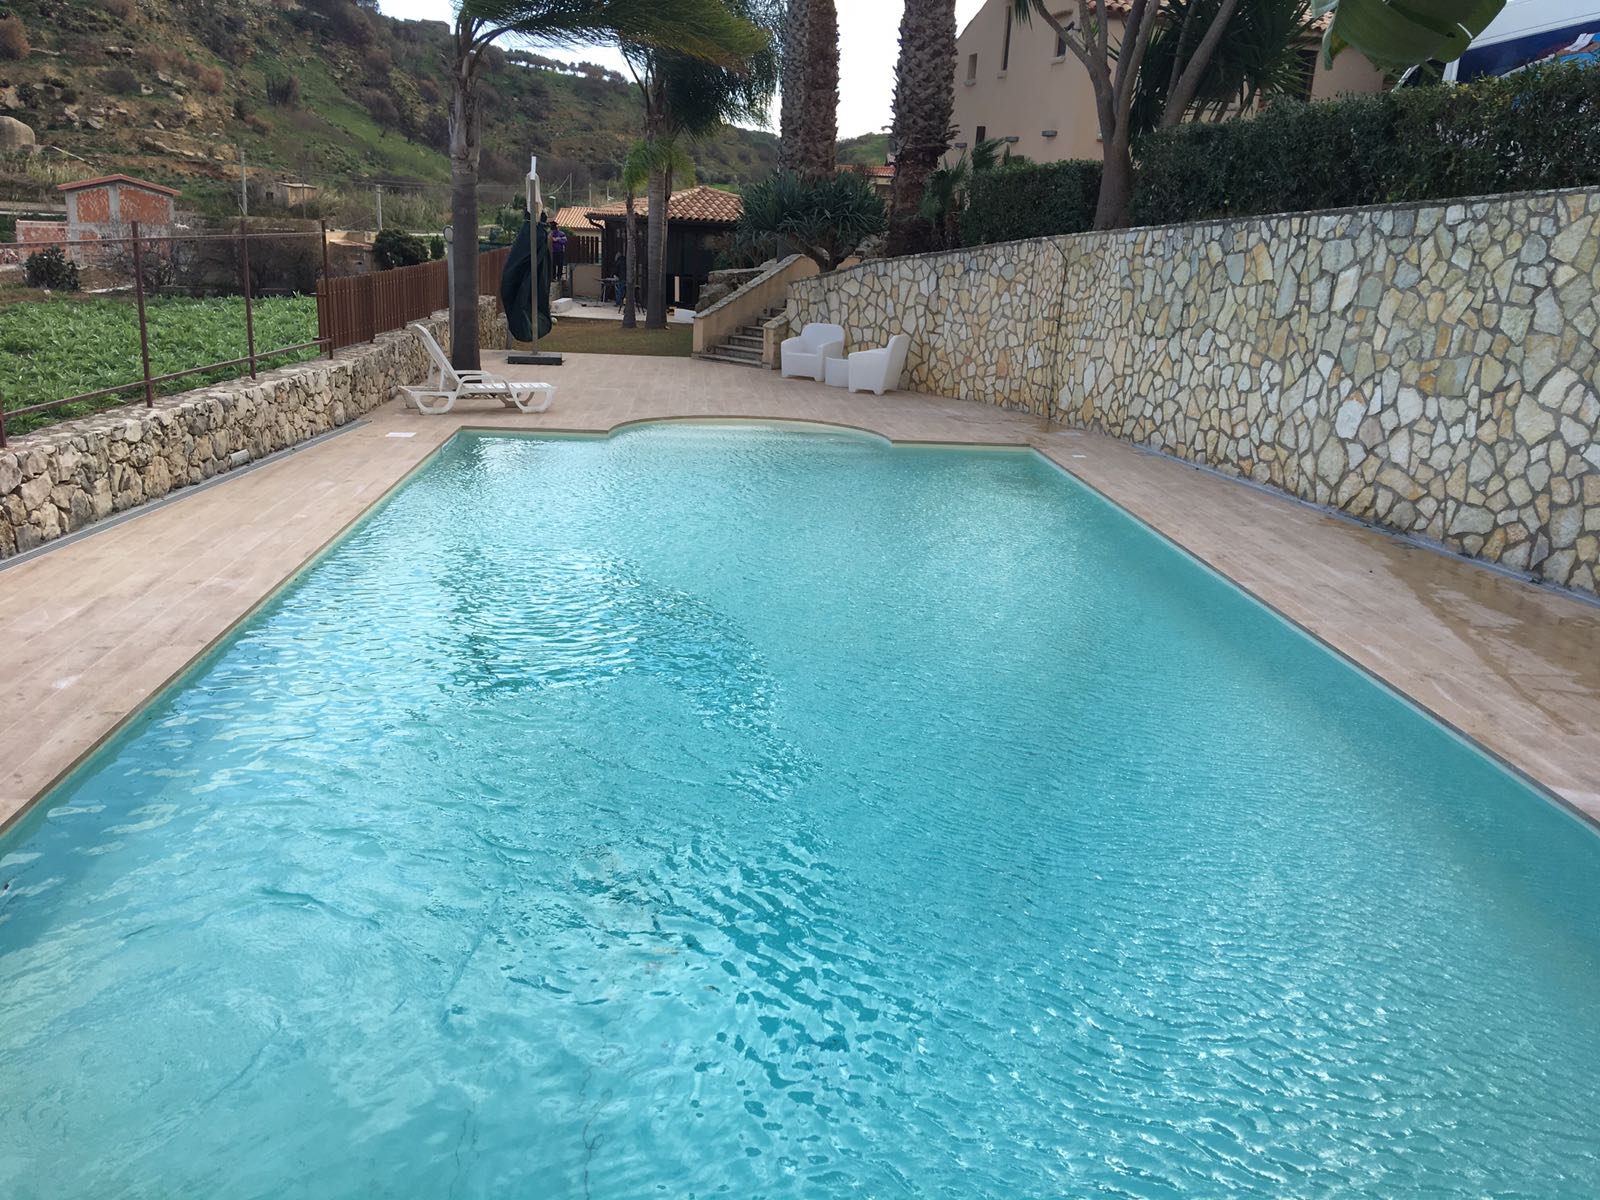 piscina restaurata 12x6 con scala romana